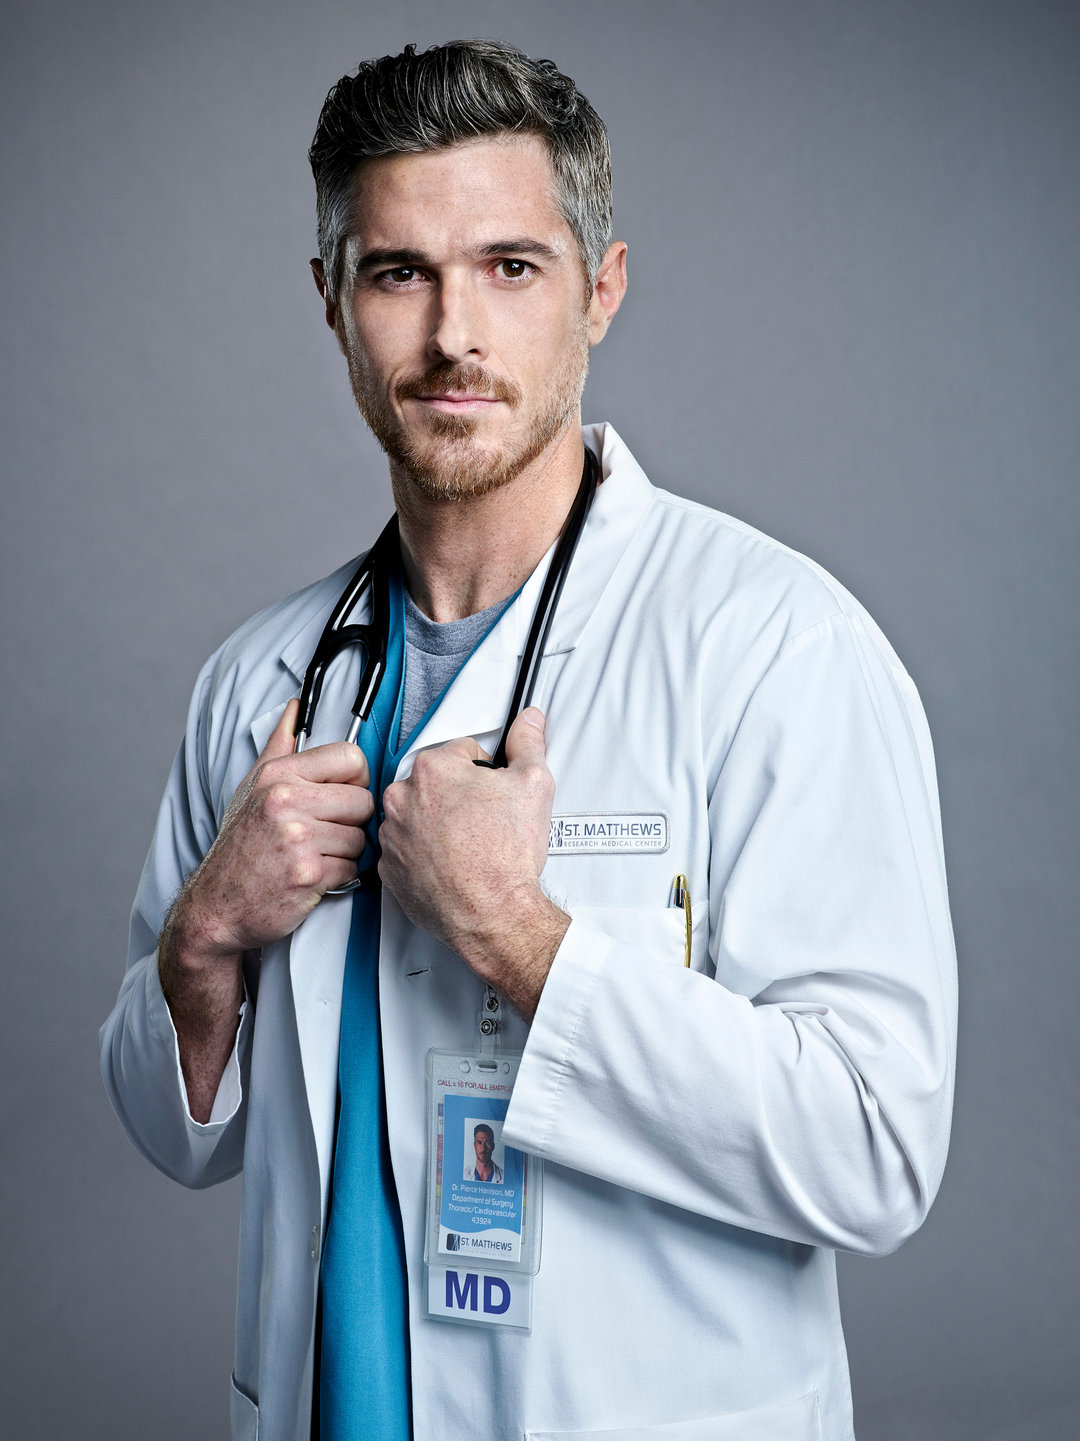 Том или ином враче. Dave Annable. Доктор Evan Antin. Дэйв Эннэйбл красные браслеты. Красивый врач мужчина.